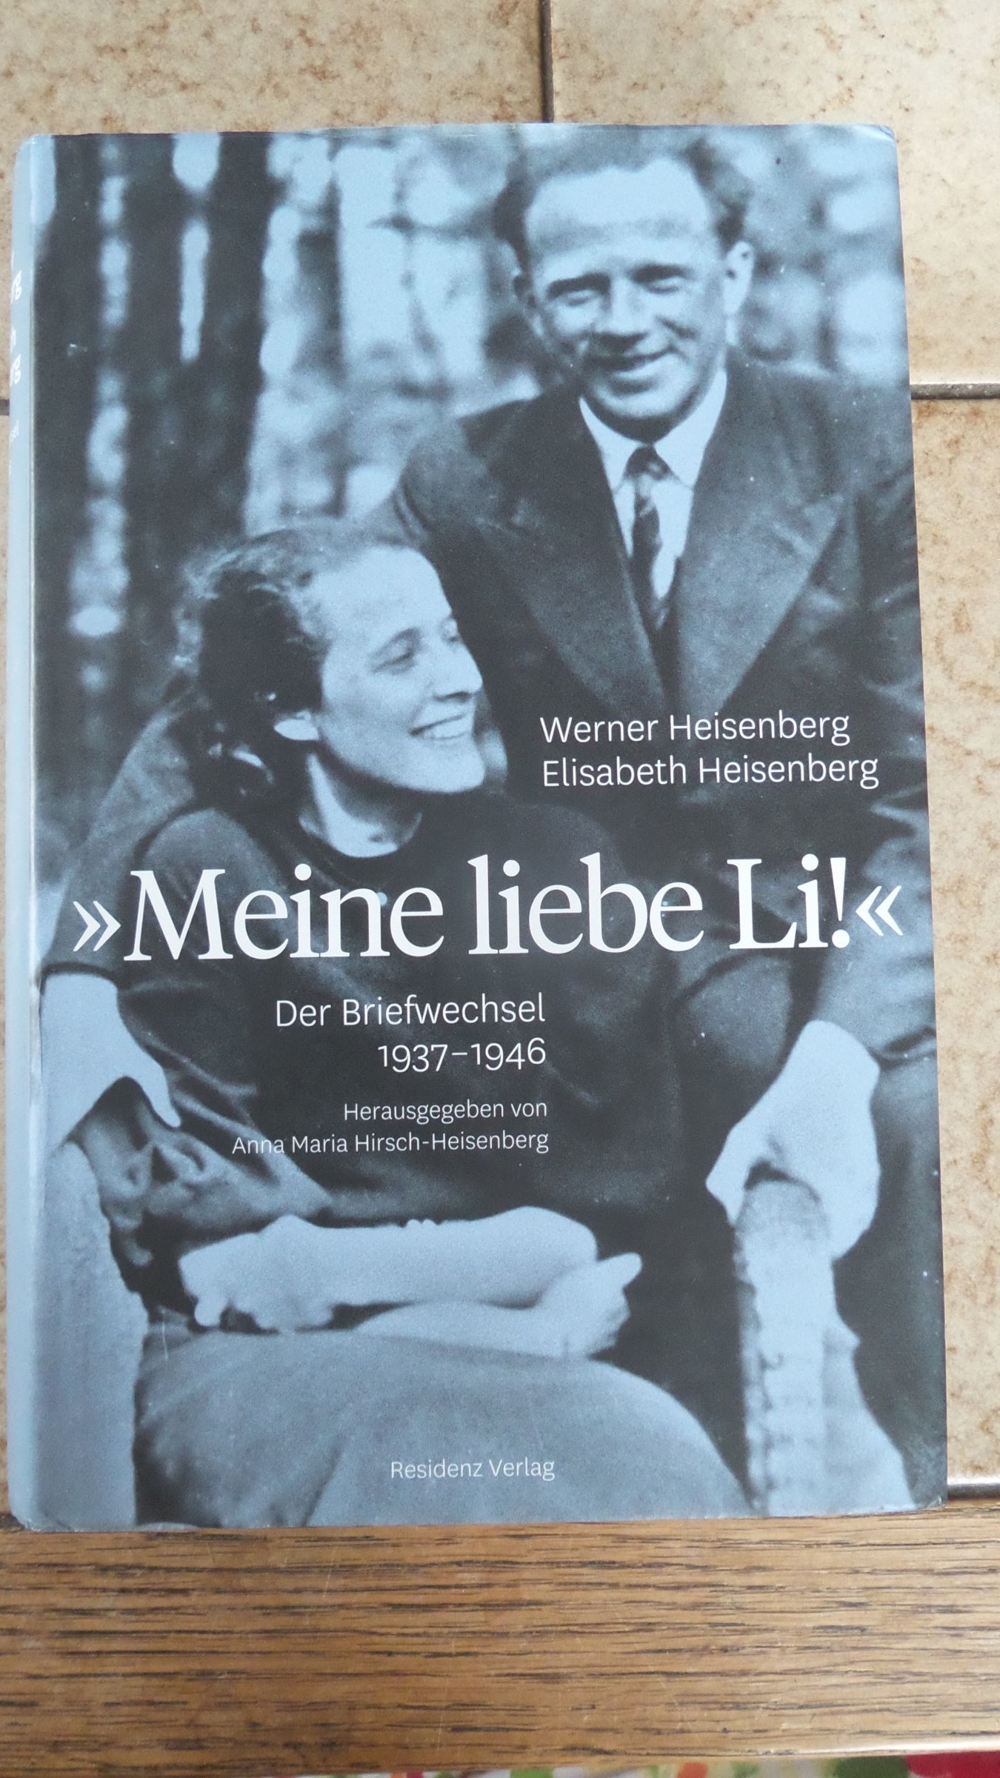 Meine liebe Li! - Der Briefwechsel 1937 - 1946;